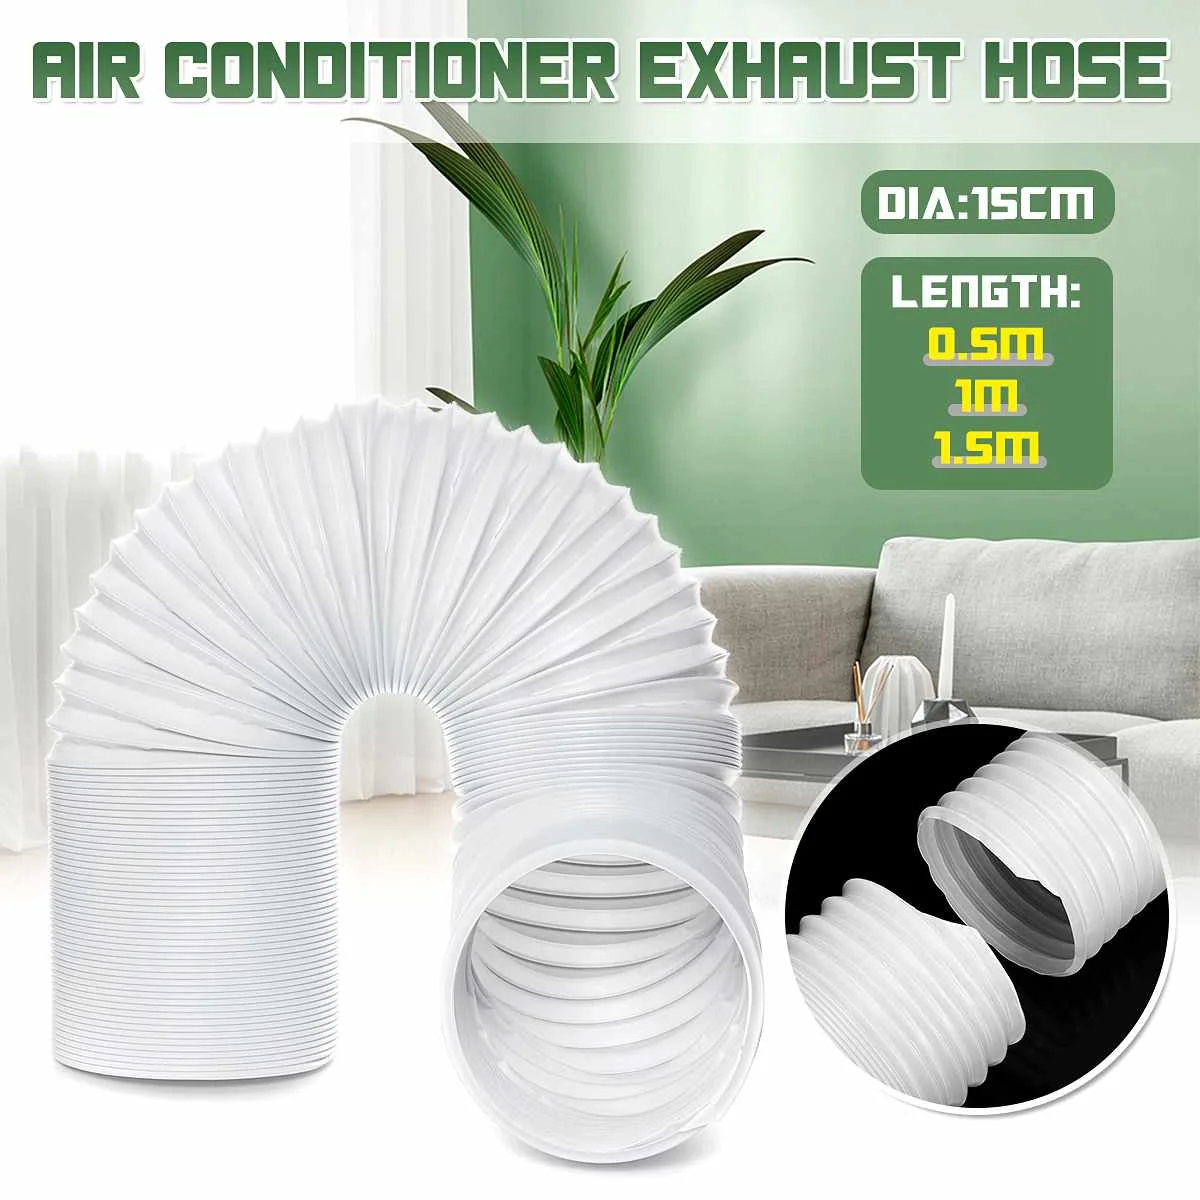 Tubo flexible de la manguera de ventilación, pieza de extensión del conducto del aire acondicionado, accesorios de 150mm de diámetro